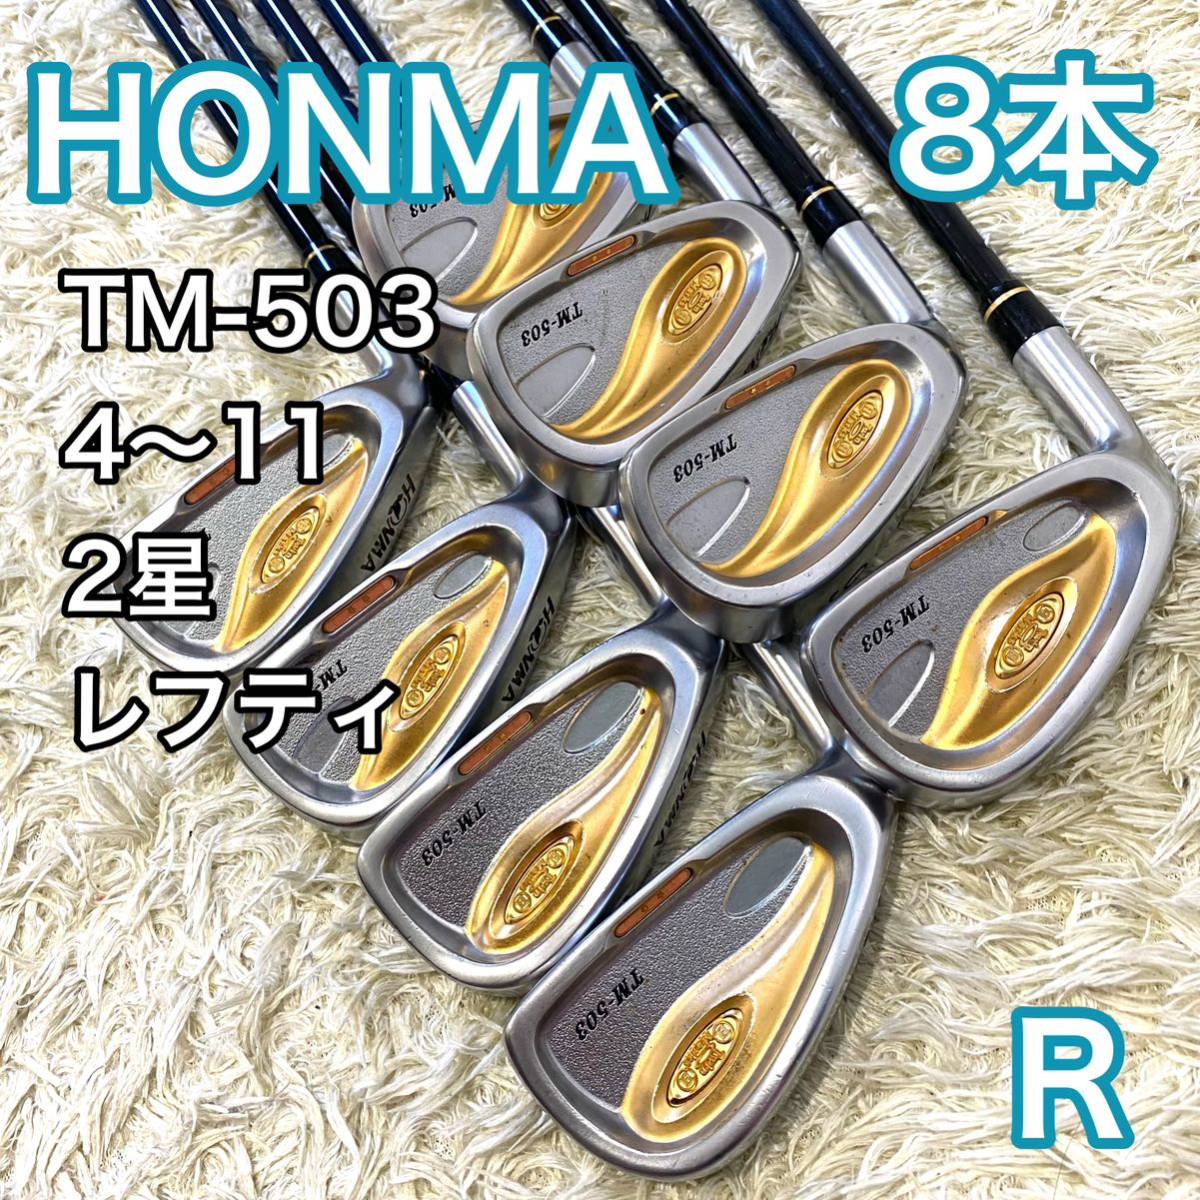 新しいスタイル TM-503 ホンマ アイアン HONMA R ゴルフクラブ 左利き